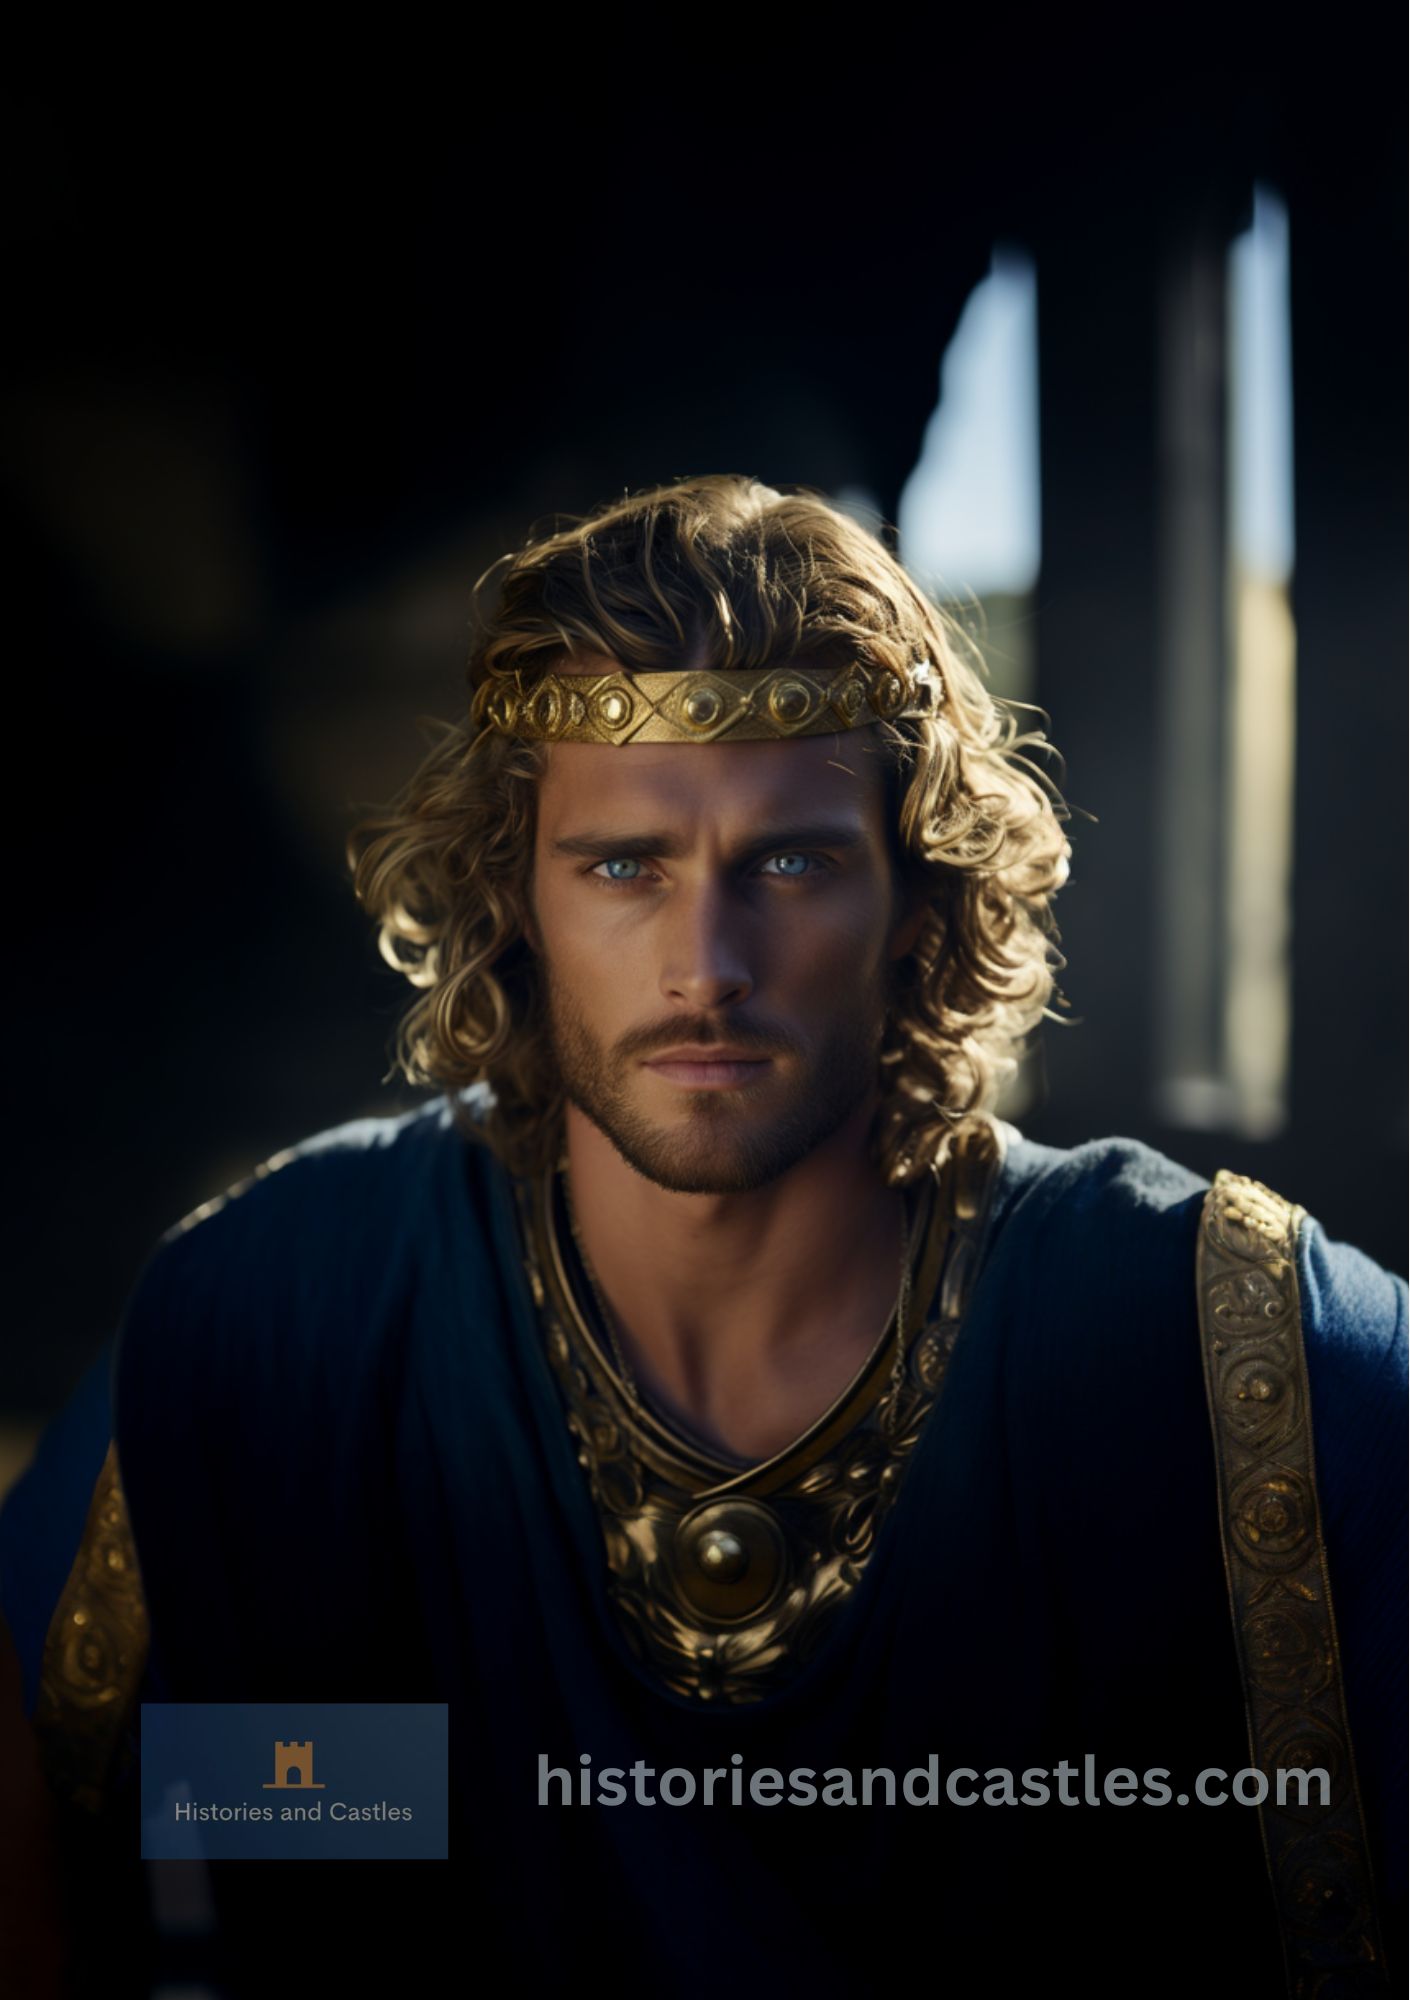 King Arthur portrait